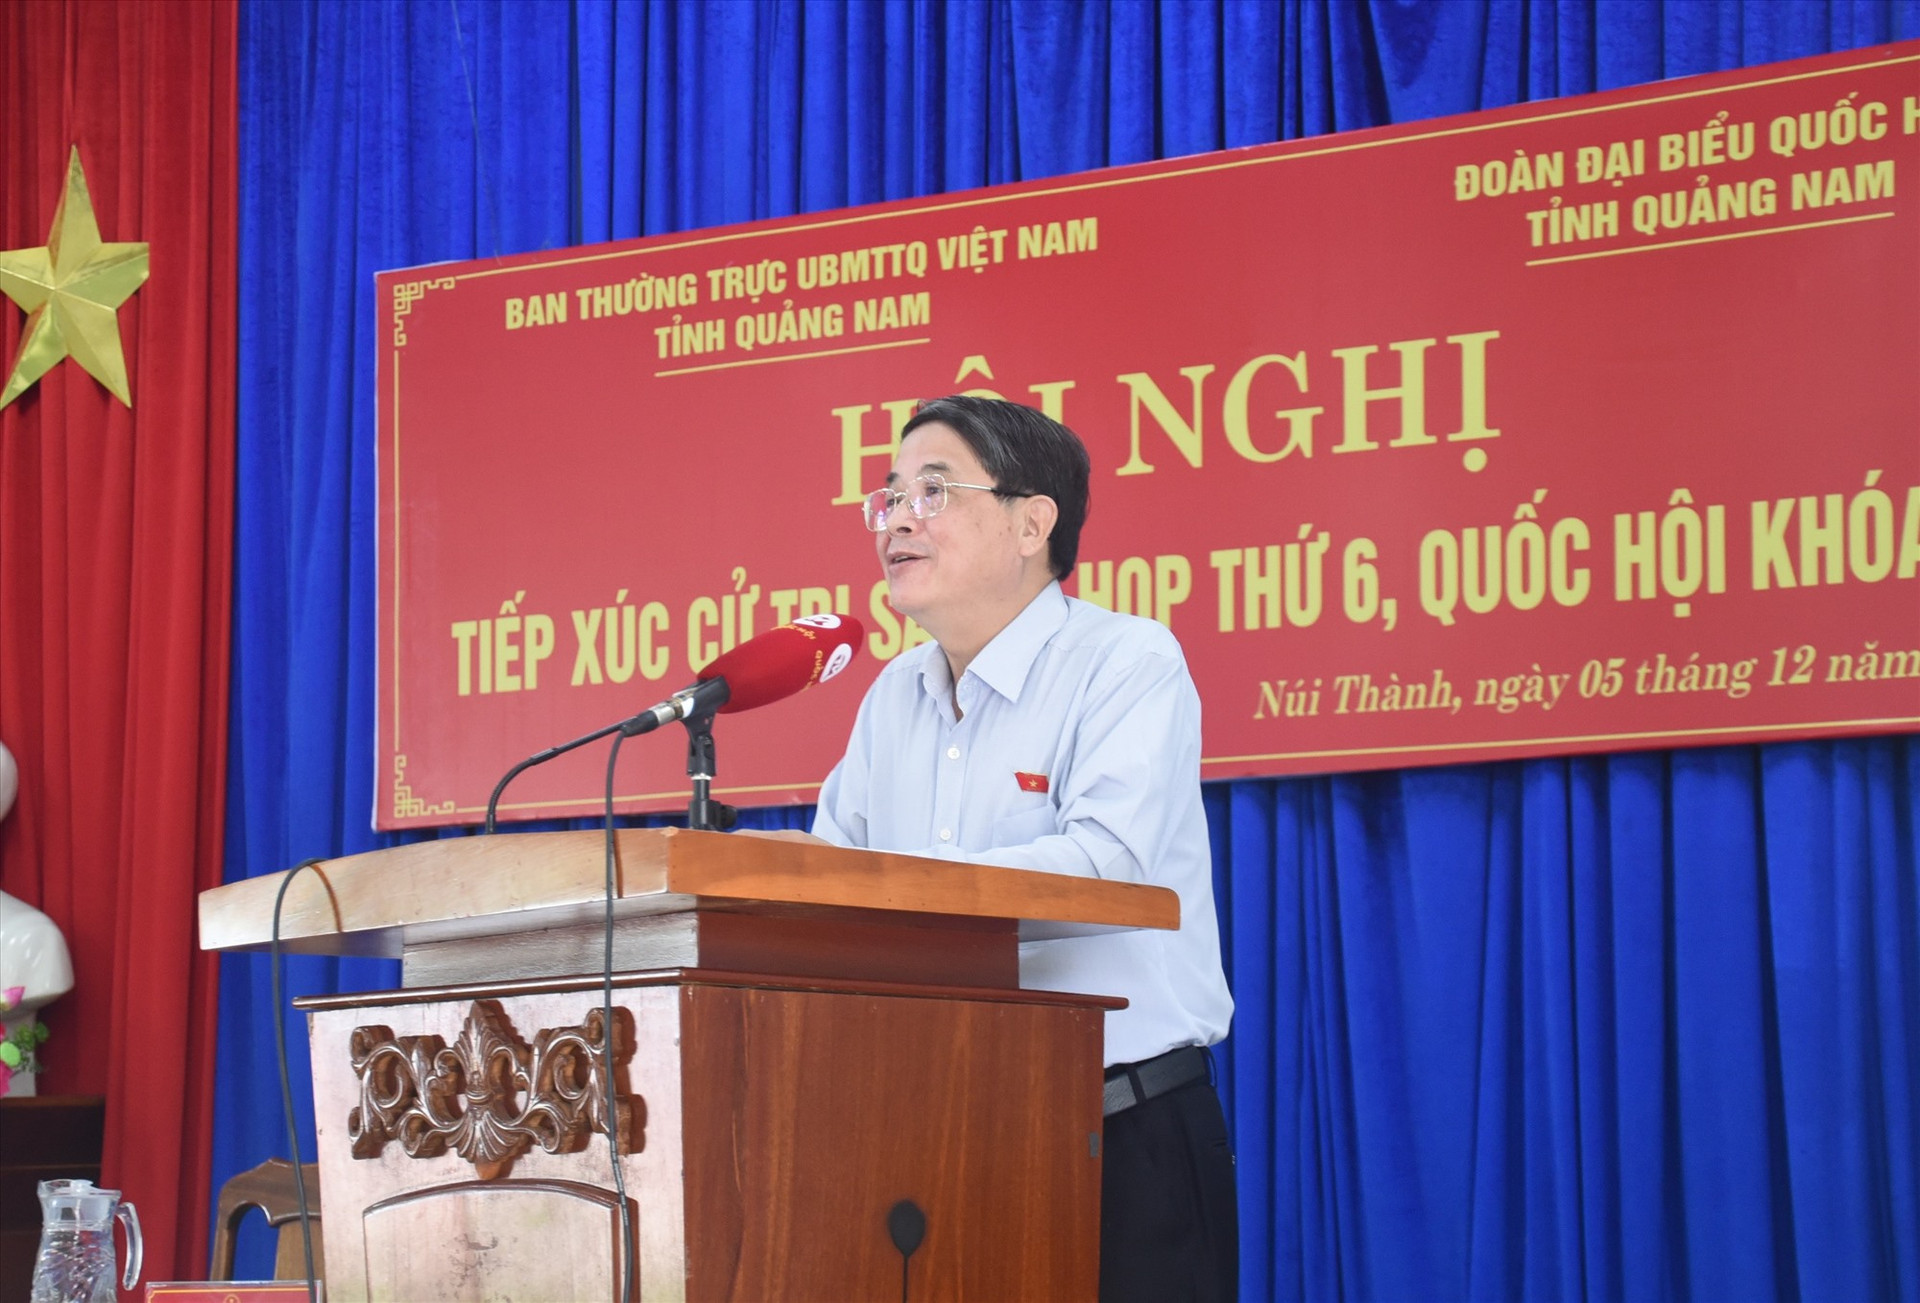 Phó Chủ tịch Quốc hội Nguyễn Đức Hải phát biểu tại hội nghị tiếp xúc cử tri huyện Núi Thành. Ảnh: X.P